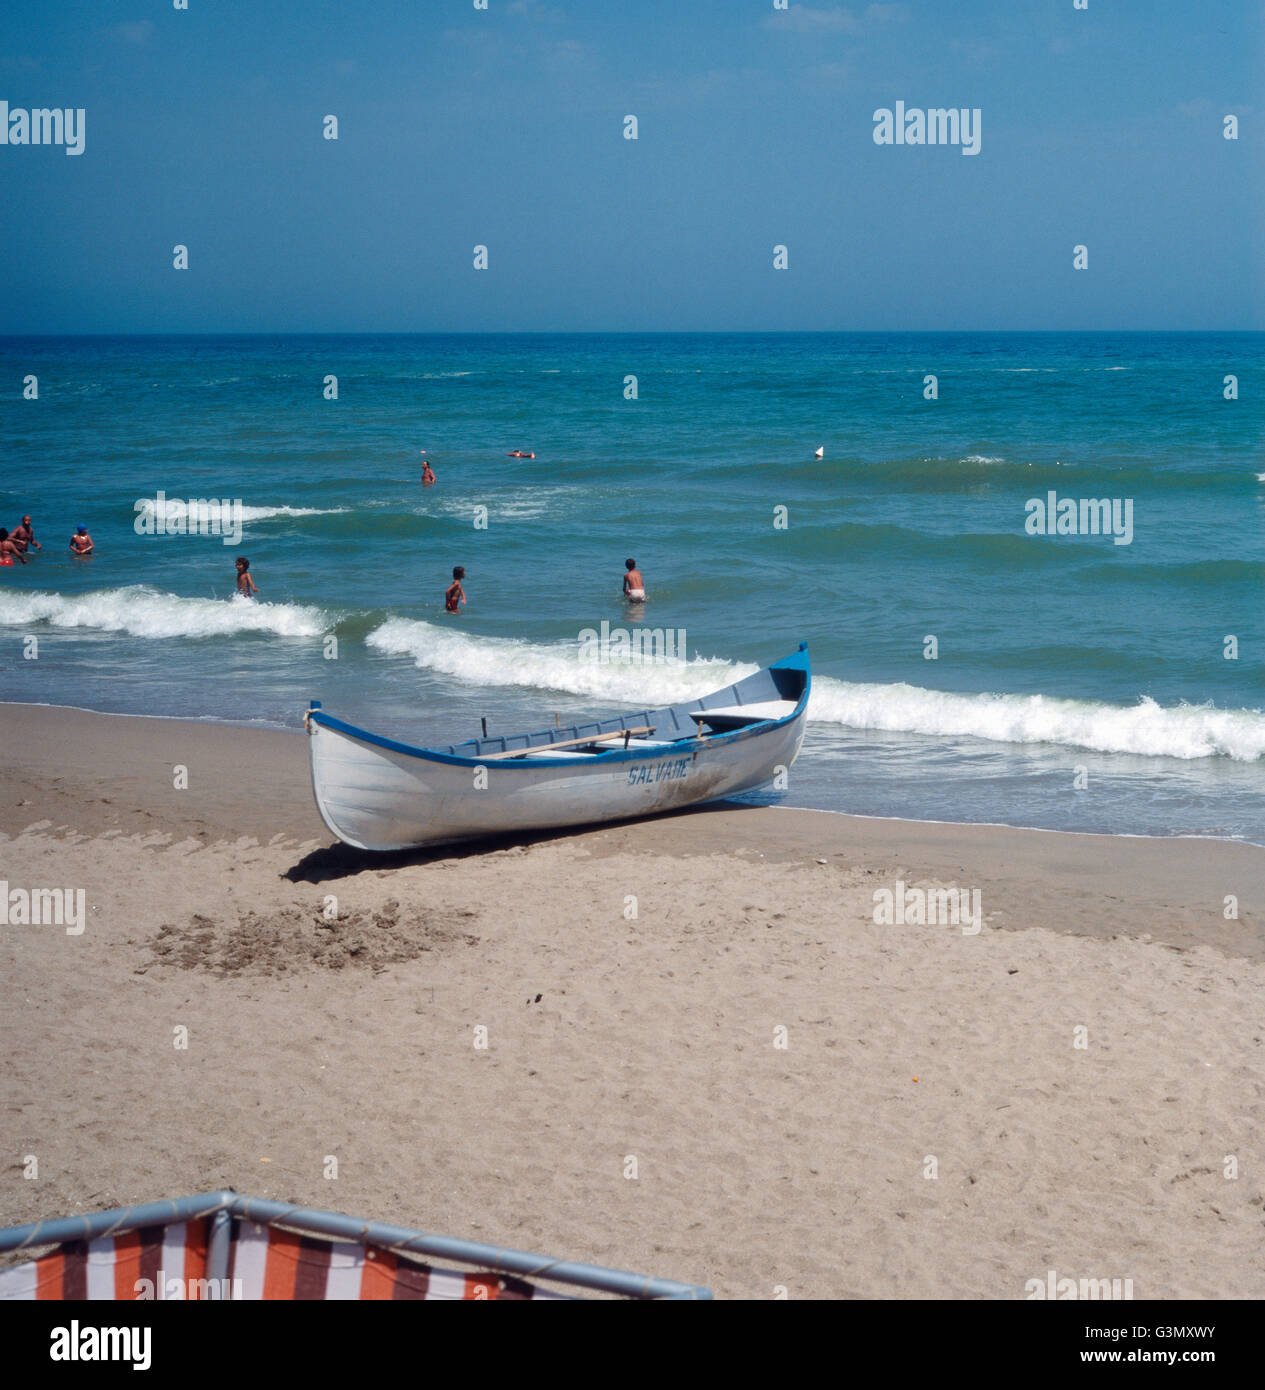 Badeurlaub am Strand von Neptun, Rumänien 1970er Jahre. Vacanza al mare sulla spiaggia di Nettuno, la Romania degli anni settanta. Foto Stock